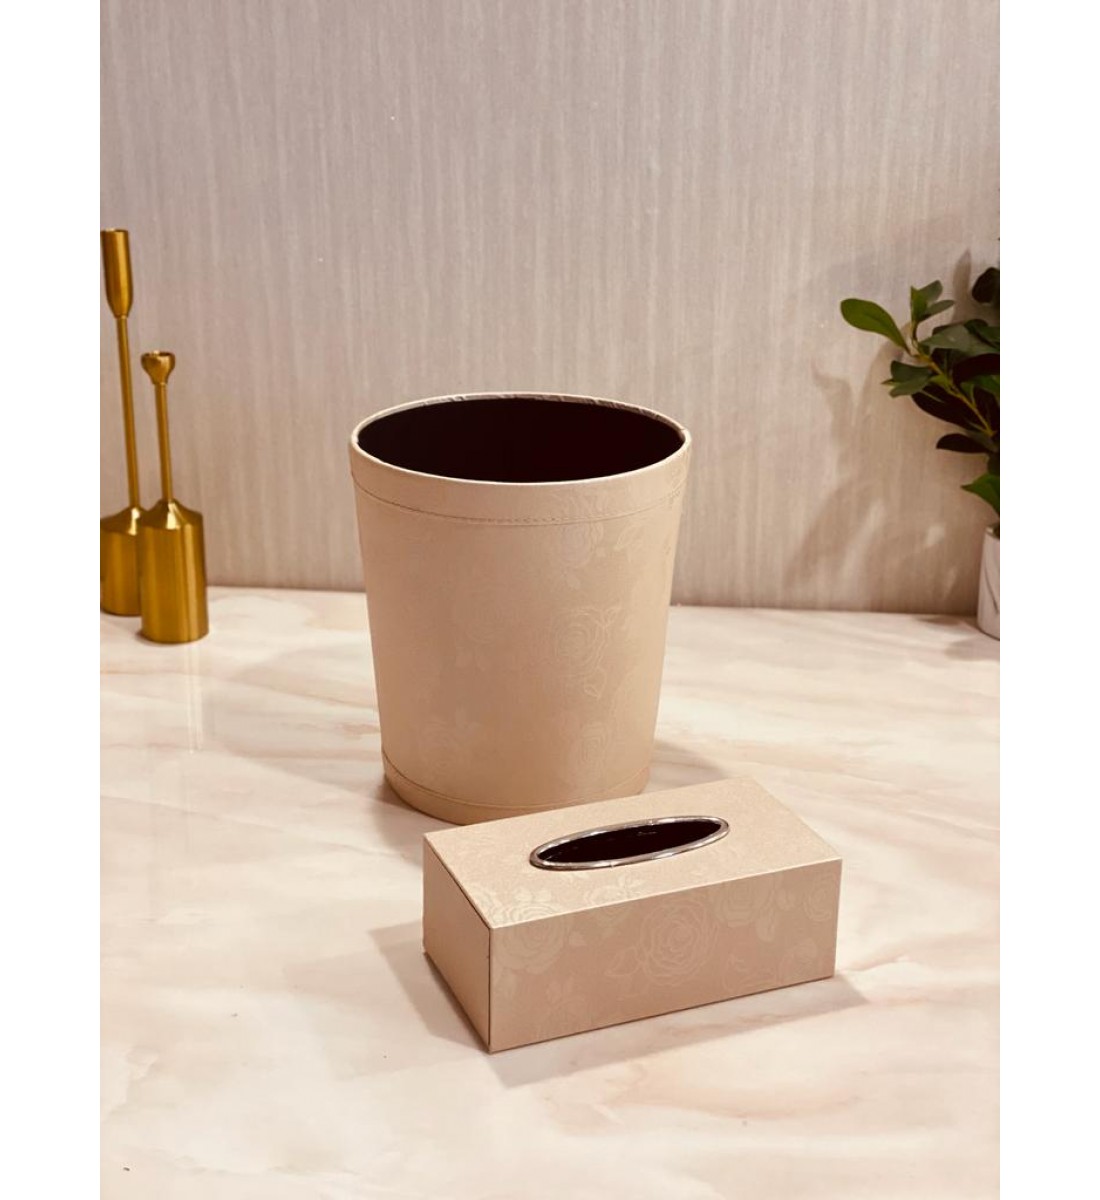 Wooden wastebasket set with tissue box